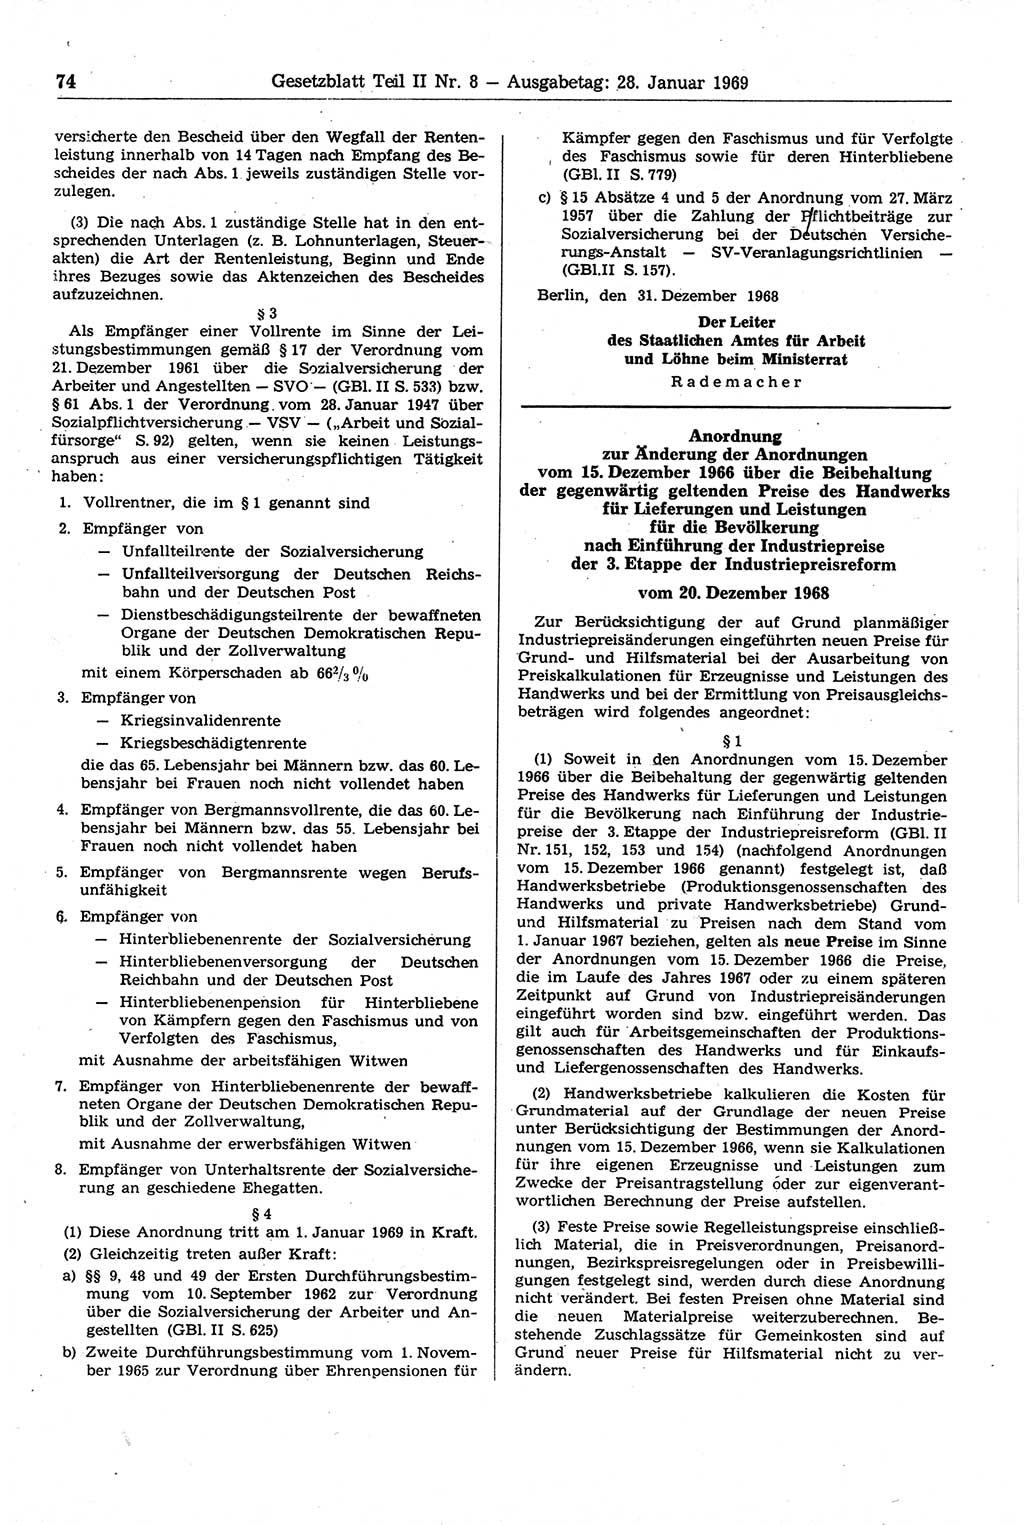 Gesetzblatt (GBl.) der Deutschen Demokratischen Republik (DDR) Teil ⅠⅠ 1969, Seite 74 (GBl. DDR ⅠⅠ 1969, S. 74)